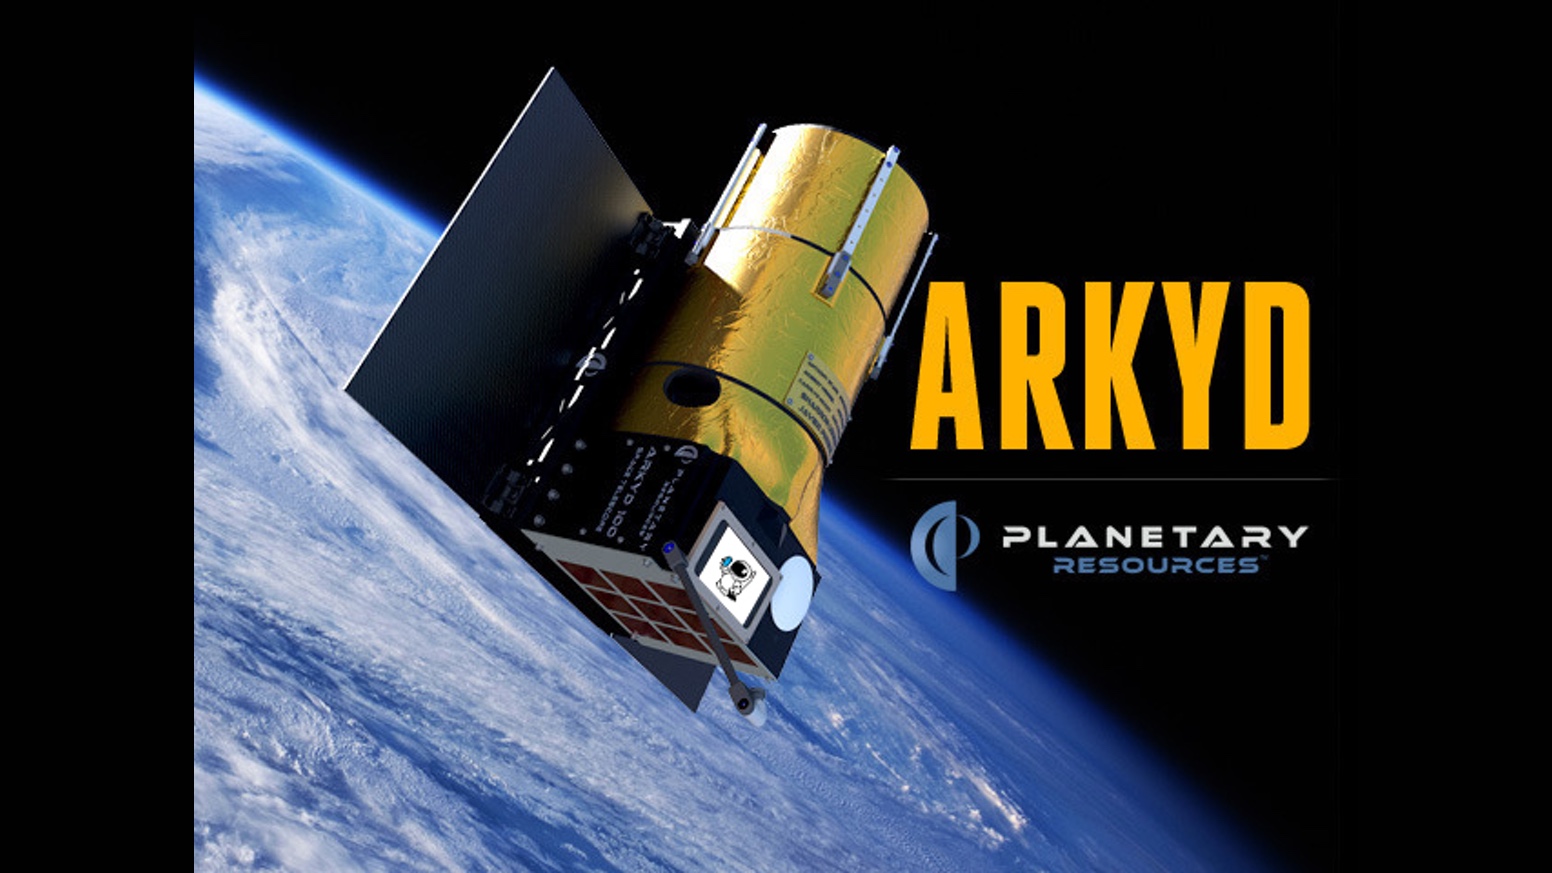 ARKYD, un telescopio que recaudó 1,5 millones a través de Kickstarter